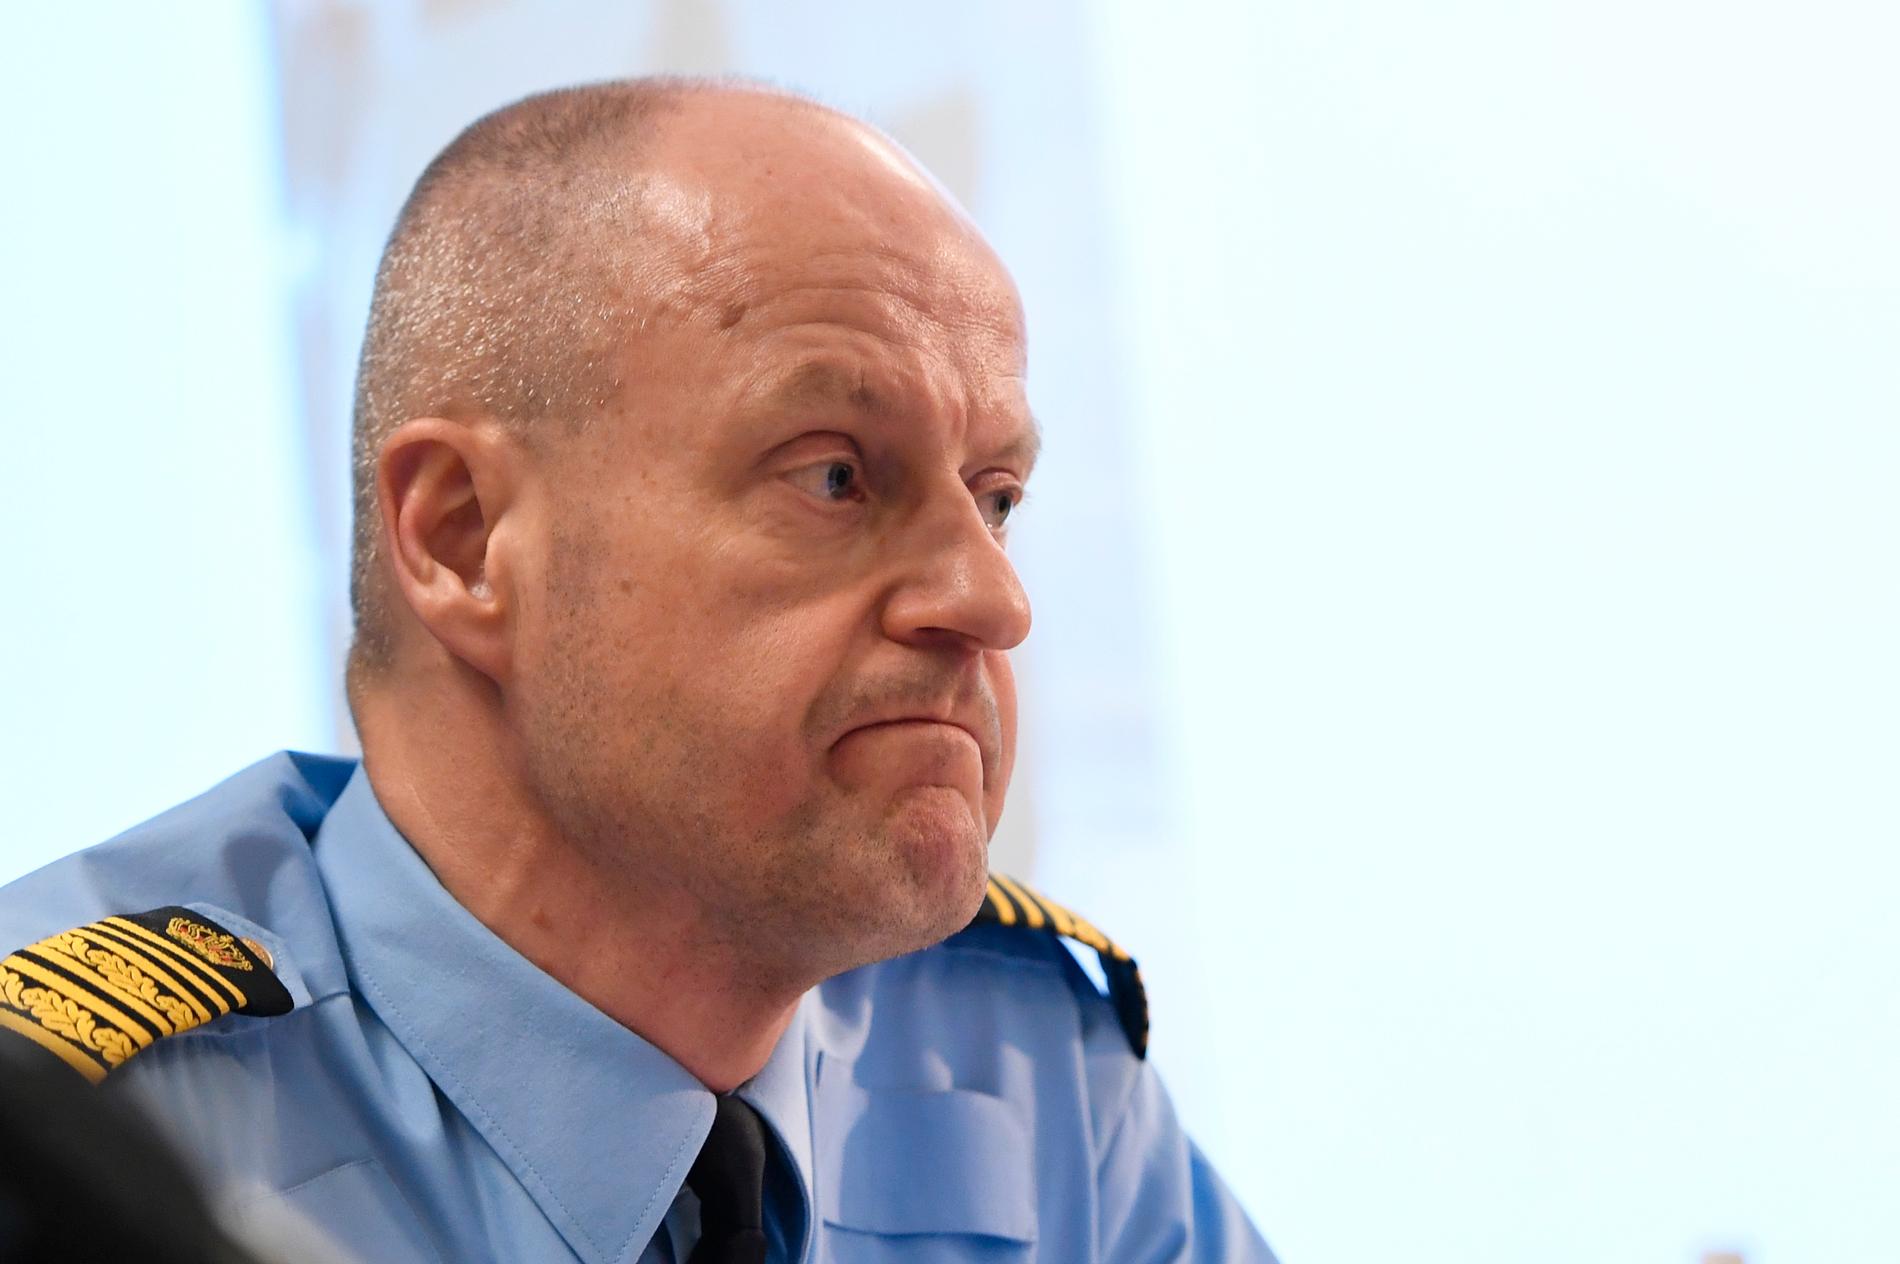 "Vi har ett väldigt allvarligt läge i Sverige", säger Mats Löfving, chef för polisens nationella operativa avdelning.